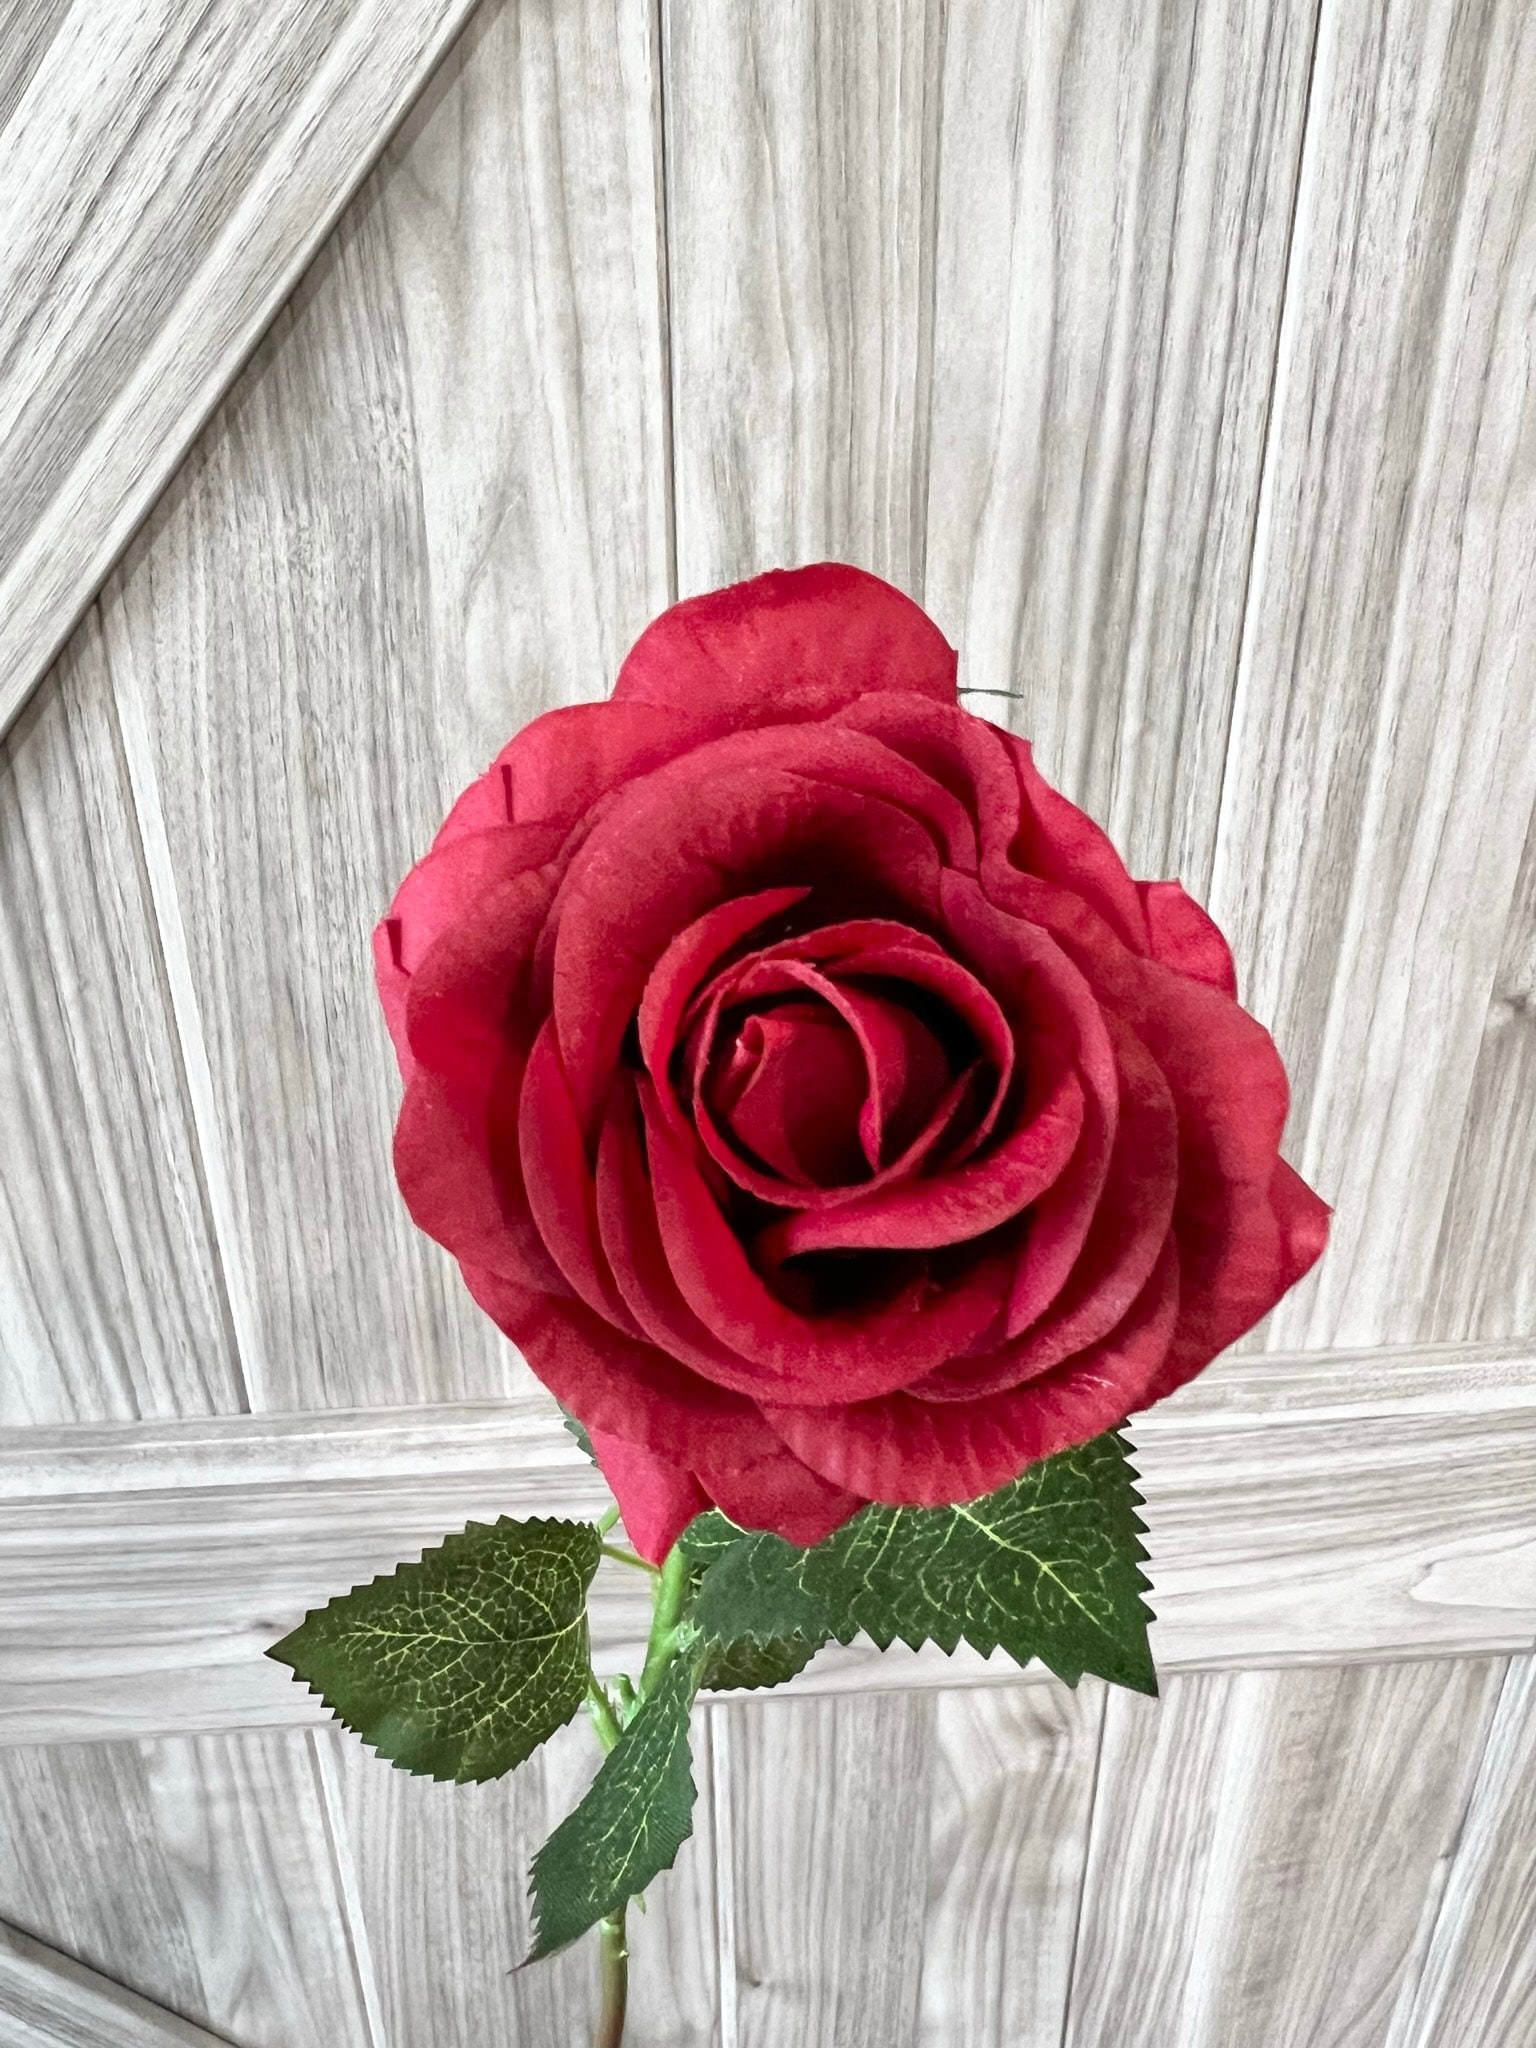 Silk Rose Petals, 1,200 Red Petals 